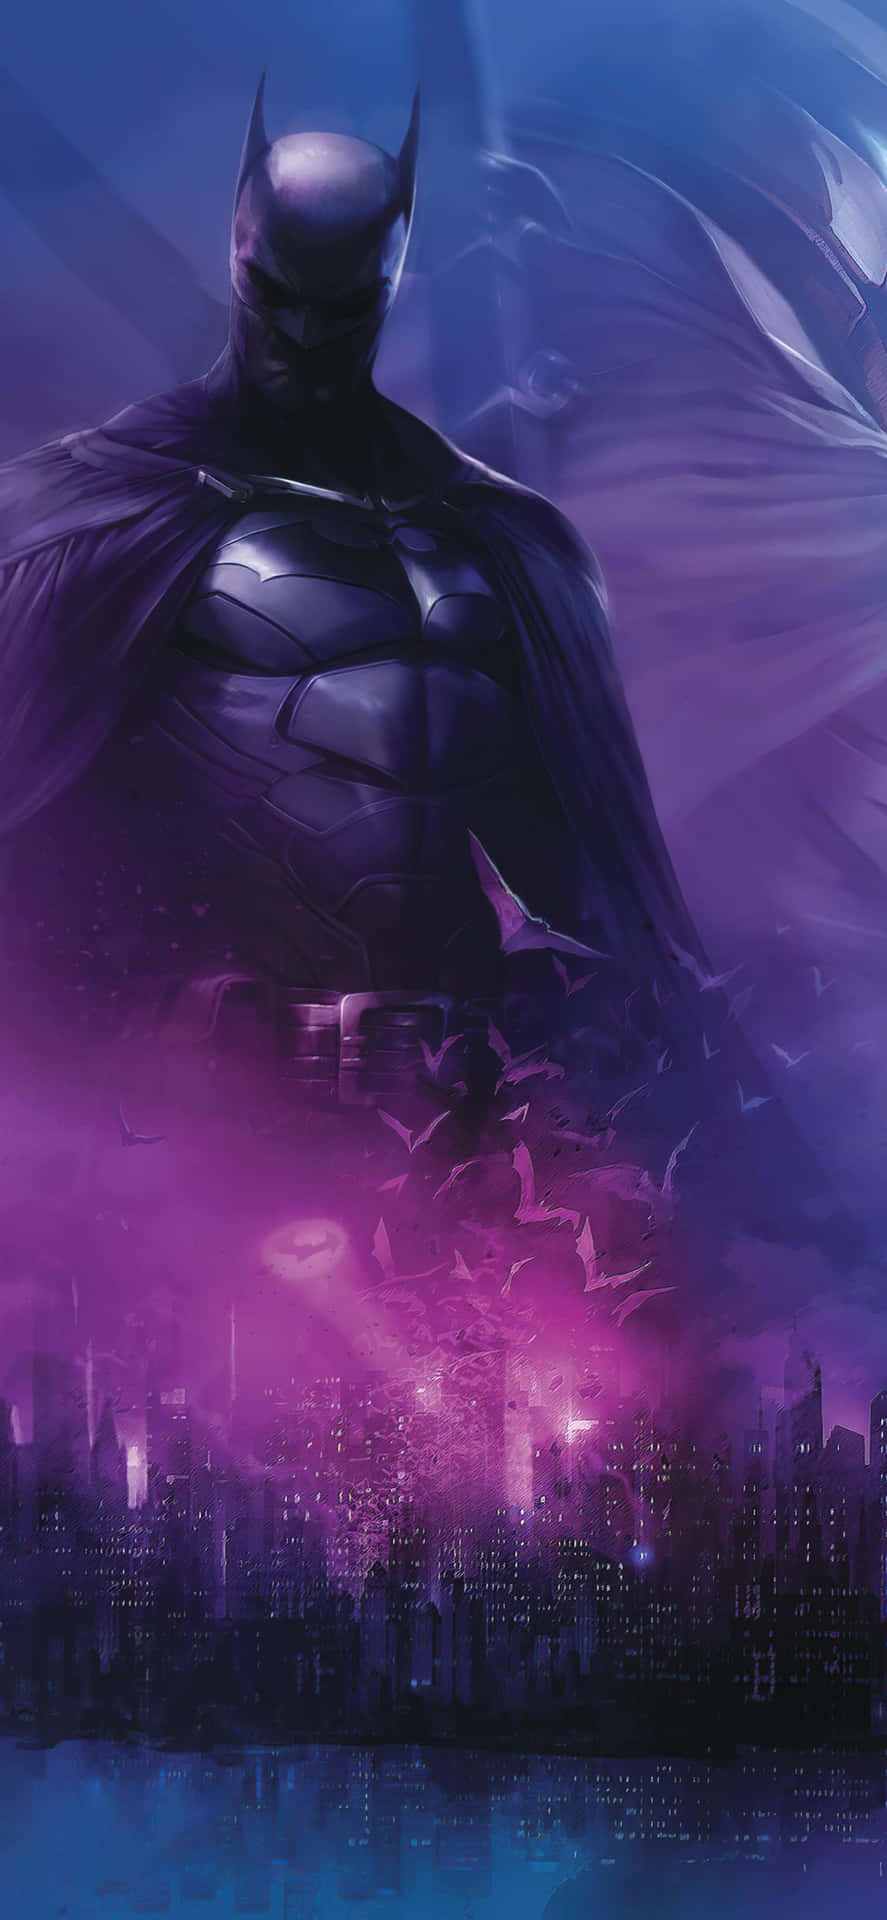 Stående højt, er Awesome Batman klar til at beskytte byen. Wallpaper